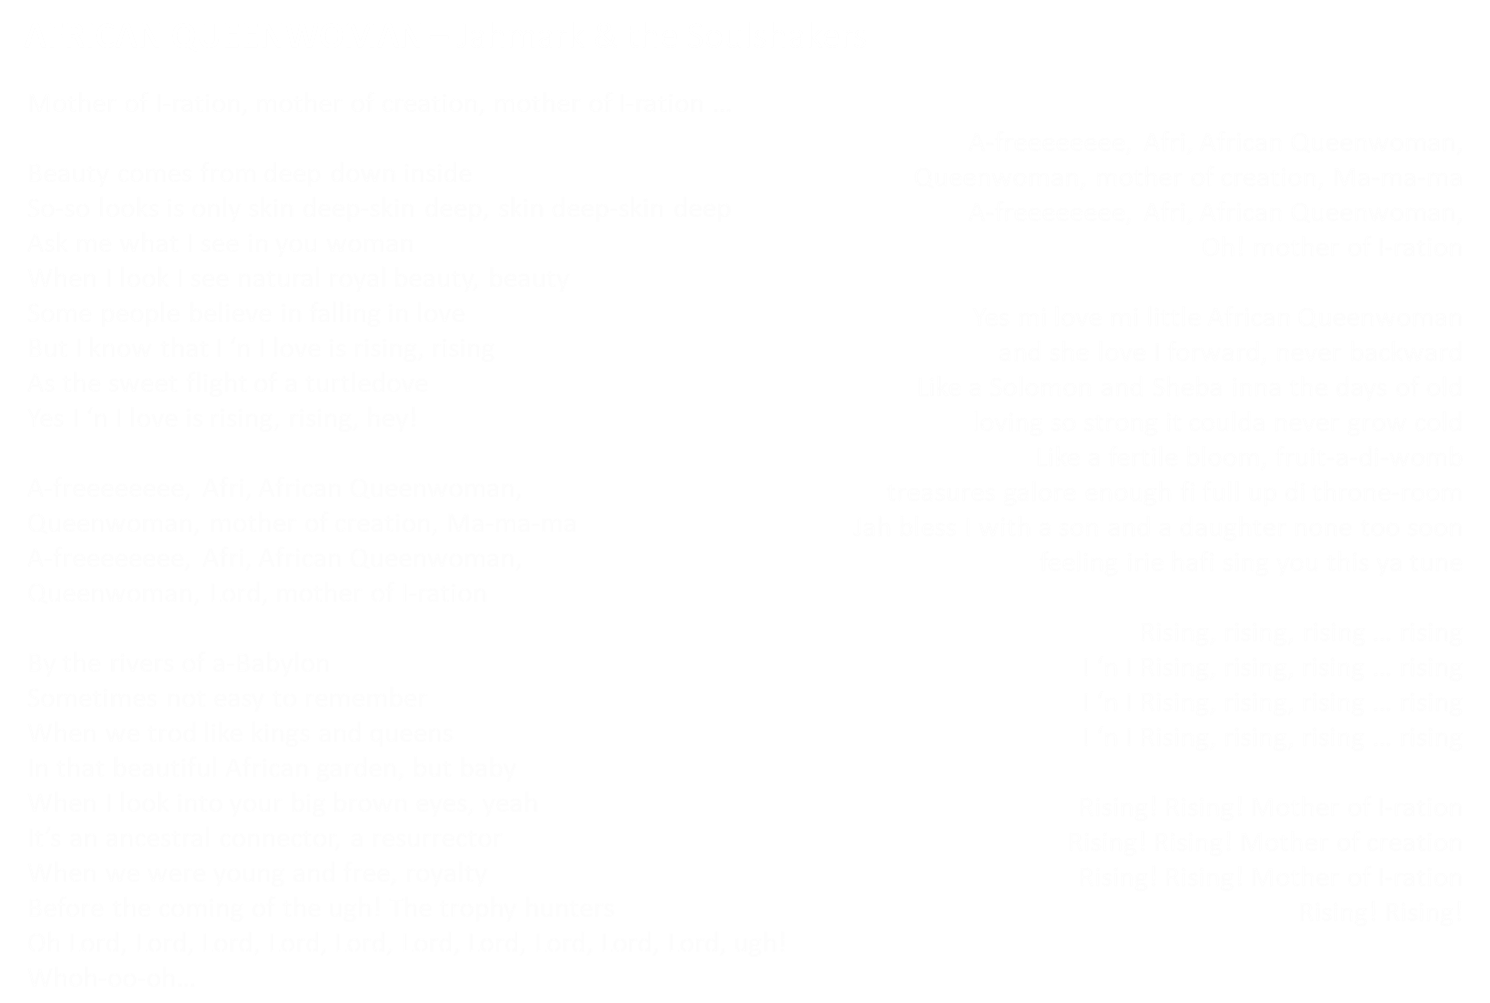 Jahmark & the Soulshakers - African Queenwoman lyrics